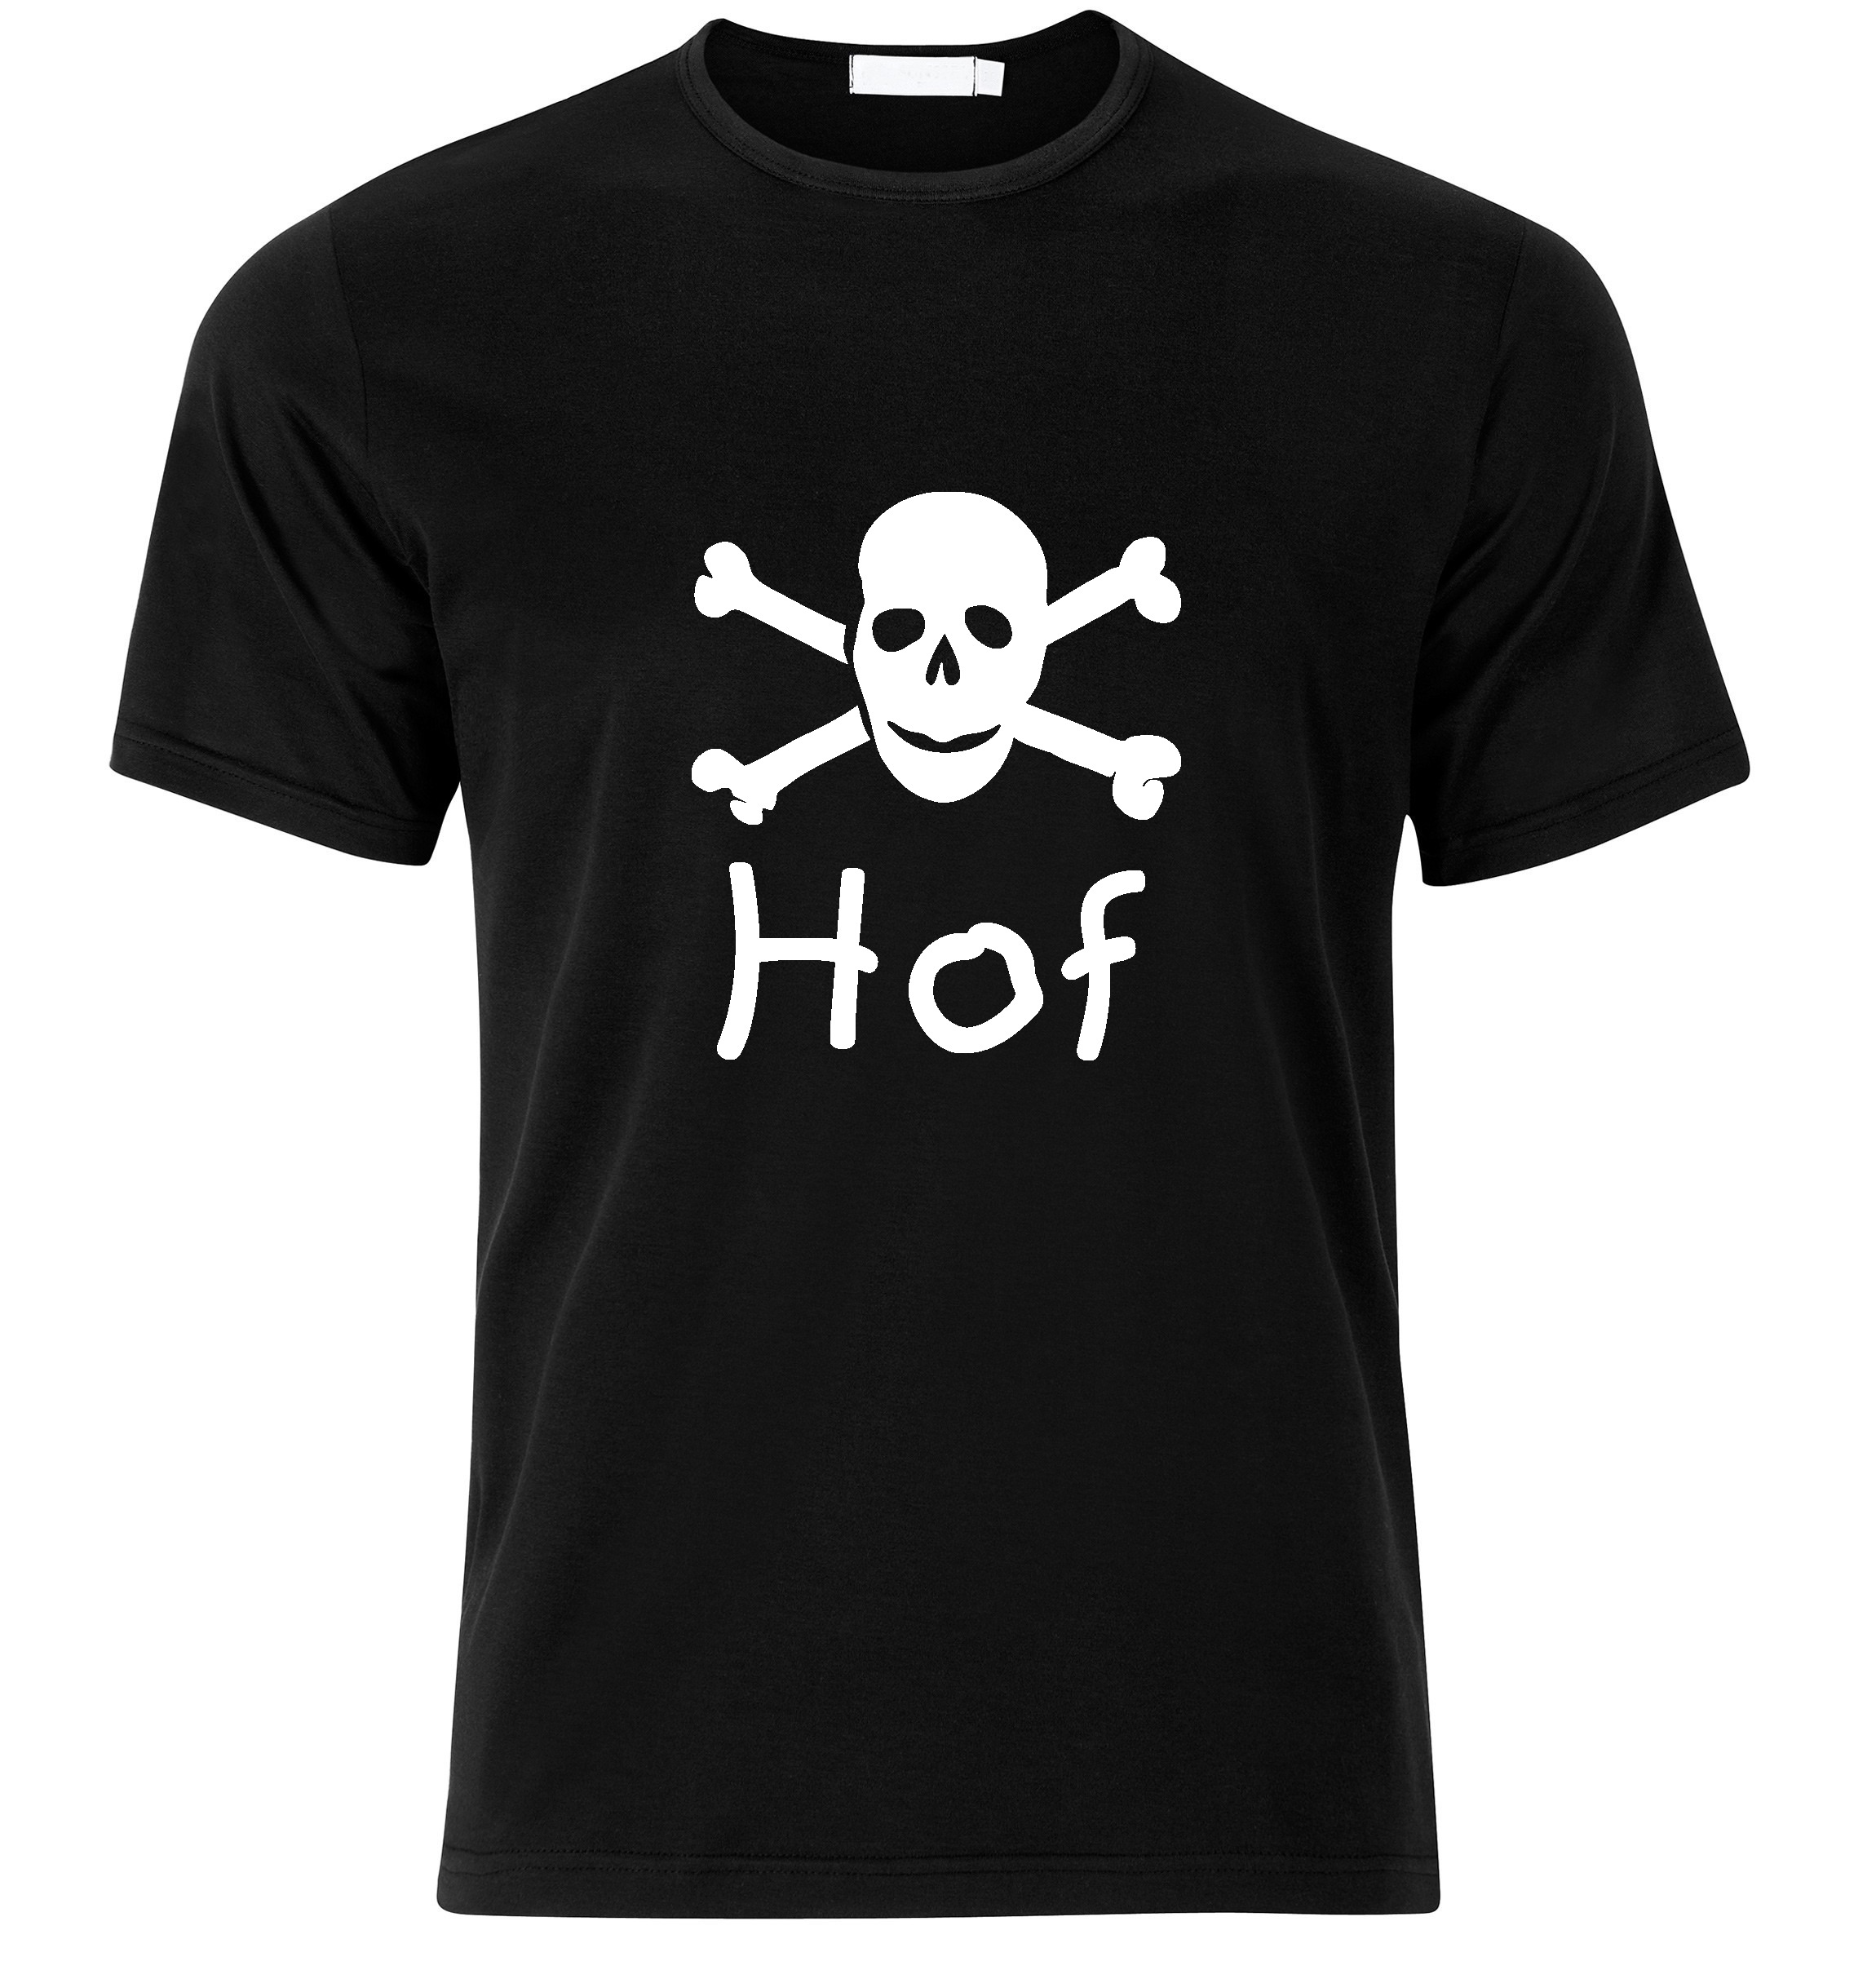 T-Shirt Hof Jolly Roger, Totenkopf